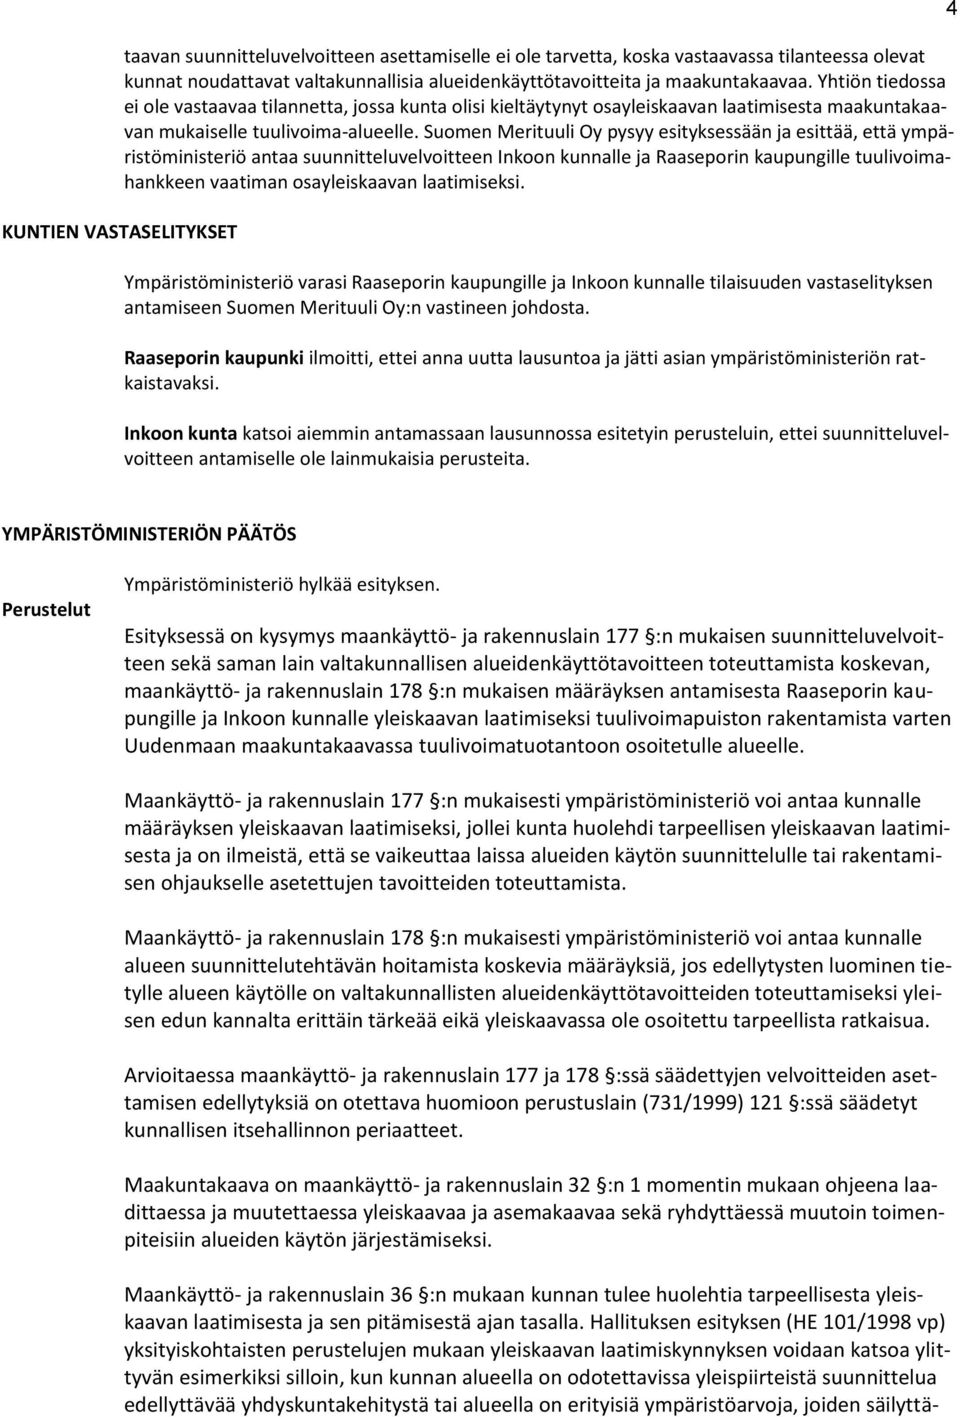 Suomen Merituuli Oy pysyy esityksessään ja esittää, että ympäristöministeriö antaa suunnitteluvelvoitteen Inkoon kunnalle ja Raaseporin kaupungille tuulivoimahankkeen vaatiman osayleiskaavan